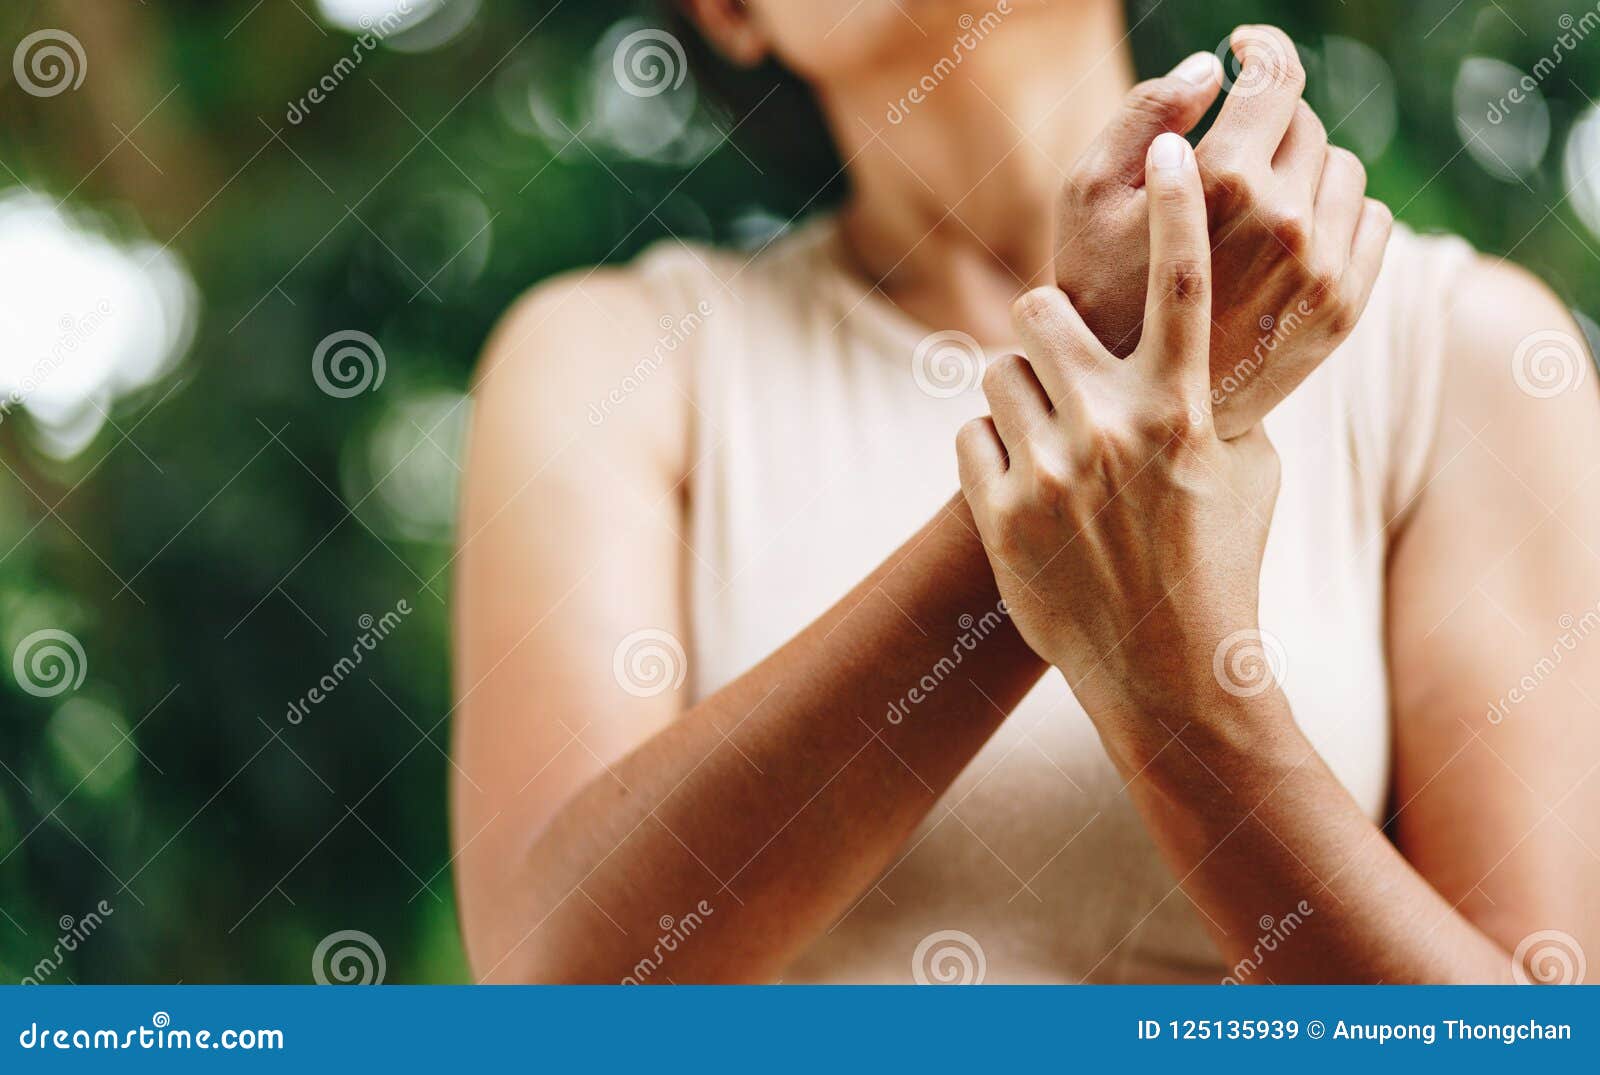 close up woman wrist pain